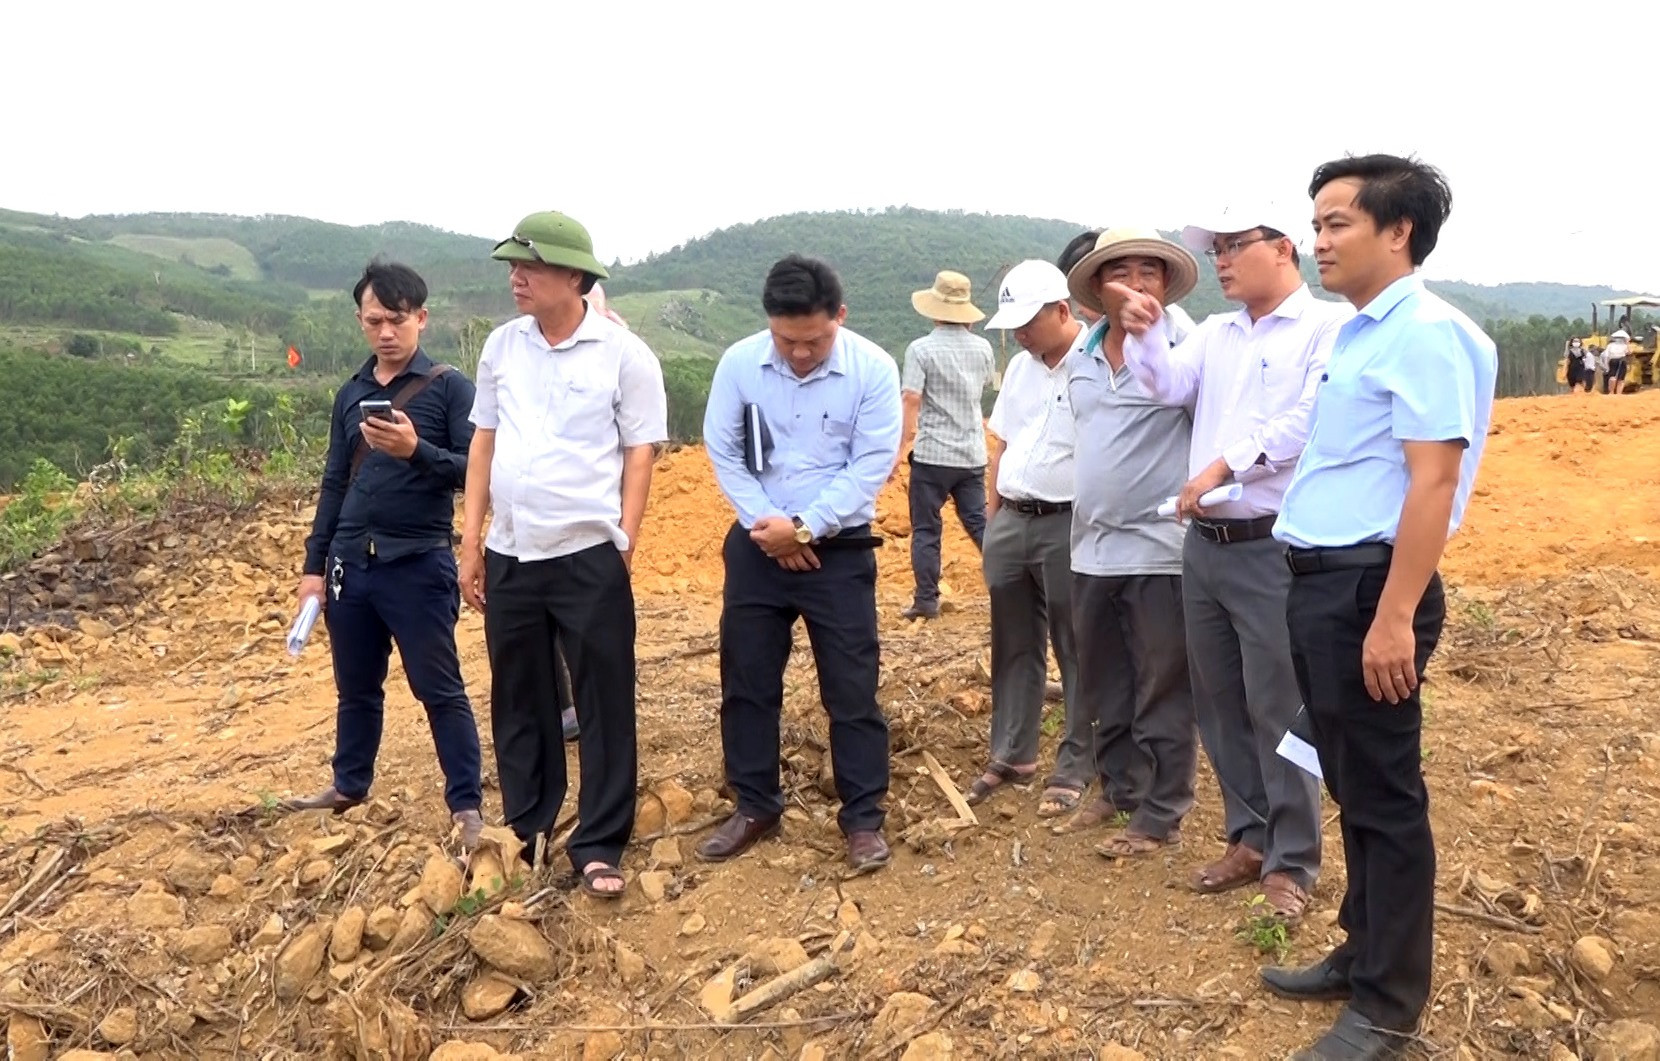 Lãnh đạo huyện Thăng Bình và Ban Quản lý dự án đầu tư xây dựng các công trình Nông nghiệp và Phát triển nông thôn tỉnh kiểm tra thực tế công tác giải phóng mặt bằng hồ chứa nước Hố Do. Ảnh: M.T